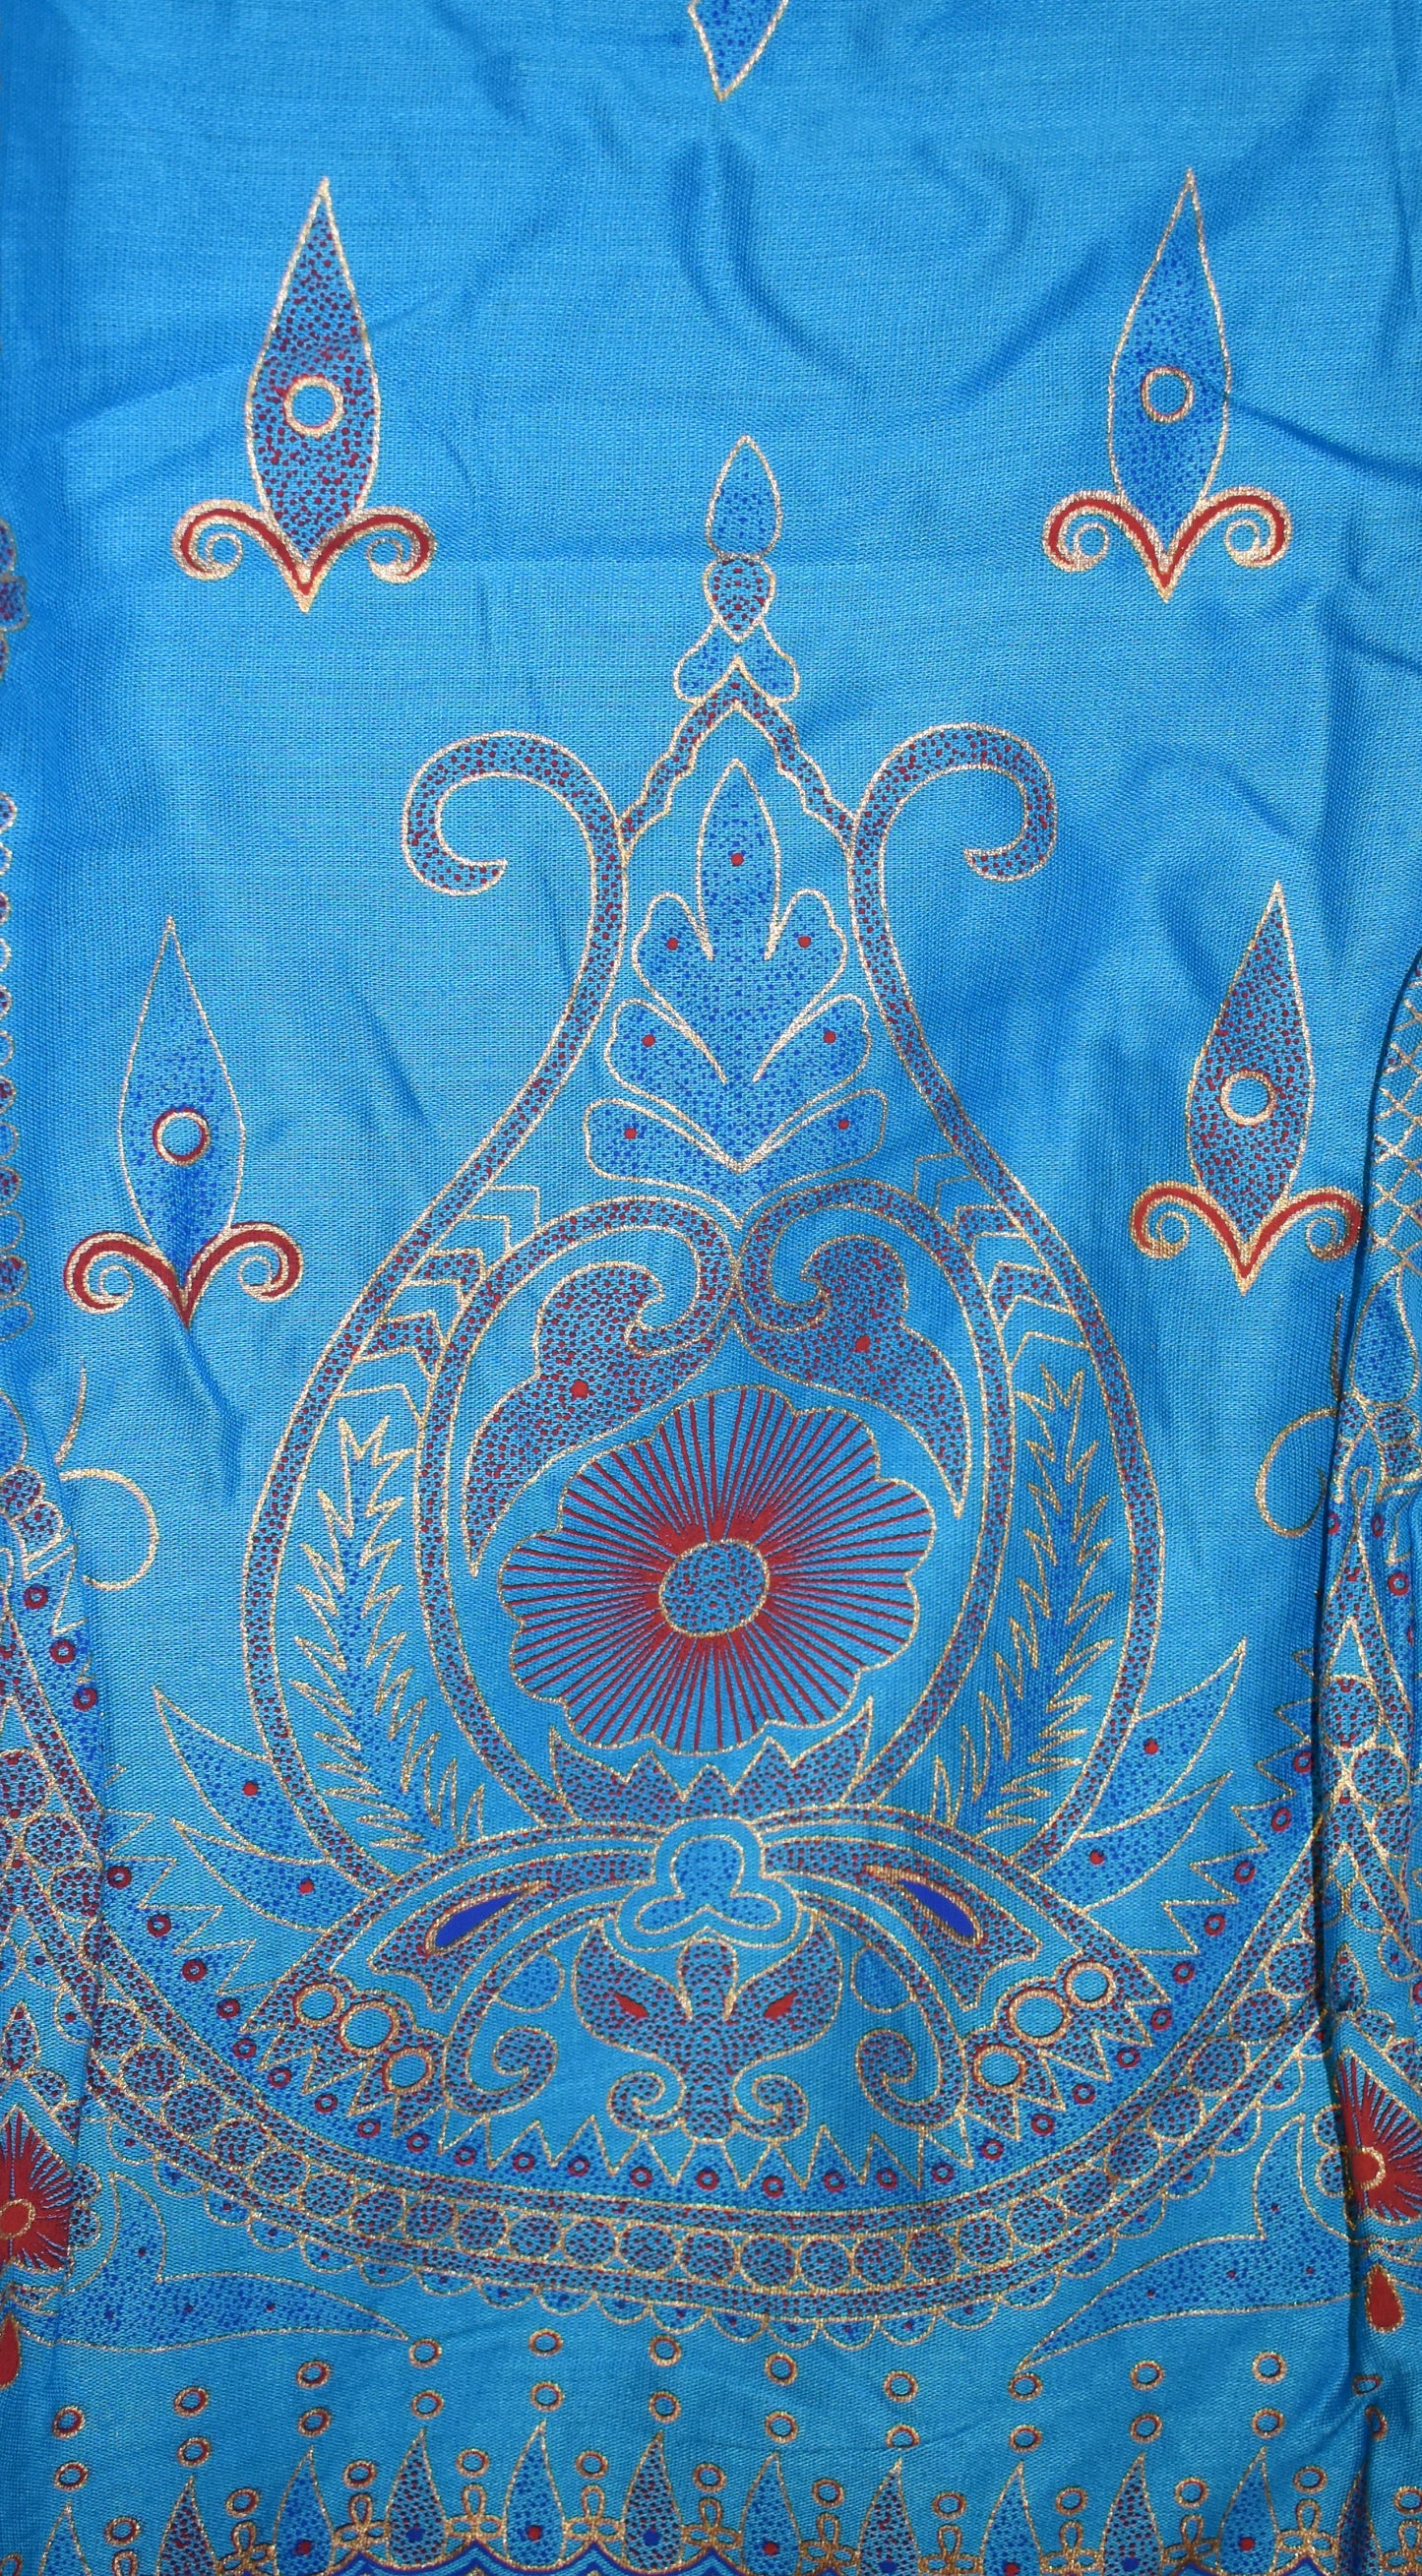 Printed Rayon Indian Skirt